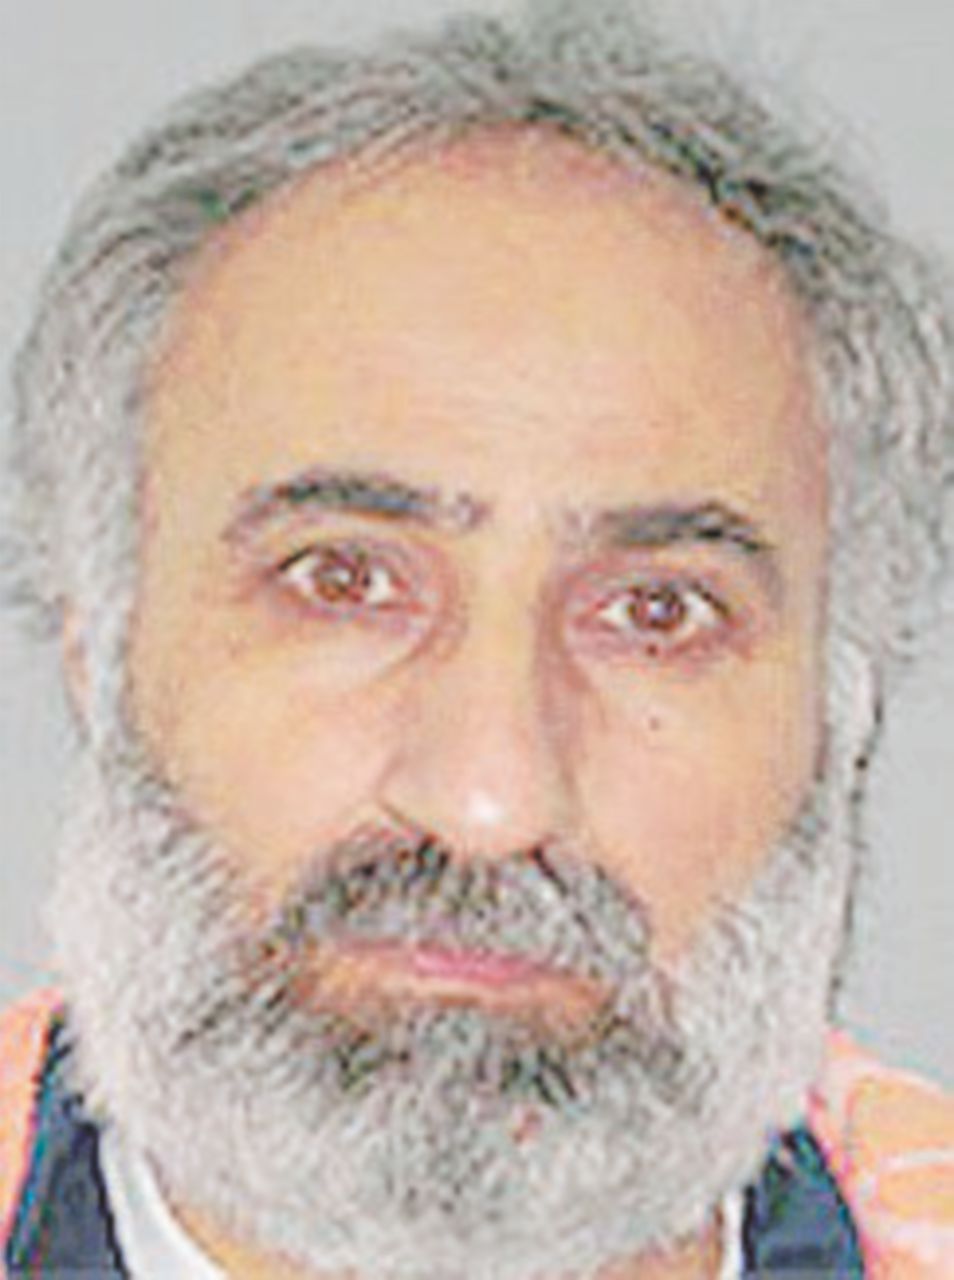 Copertina di Ucciso il ministro di al-Baghdadi ma l’obiettivo era prenderlo vivo